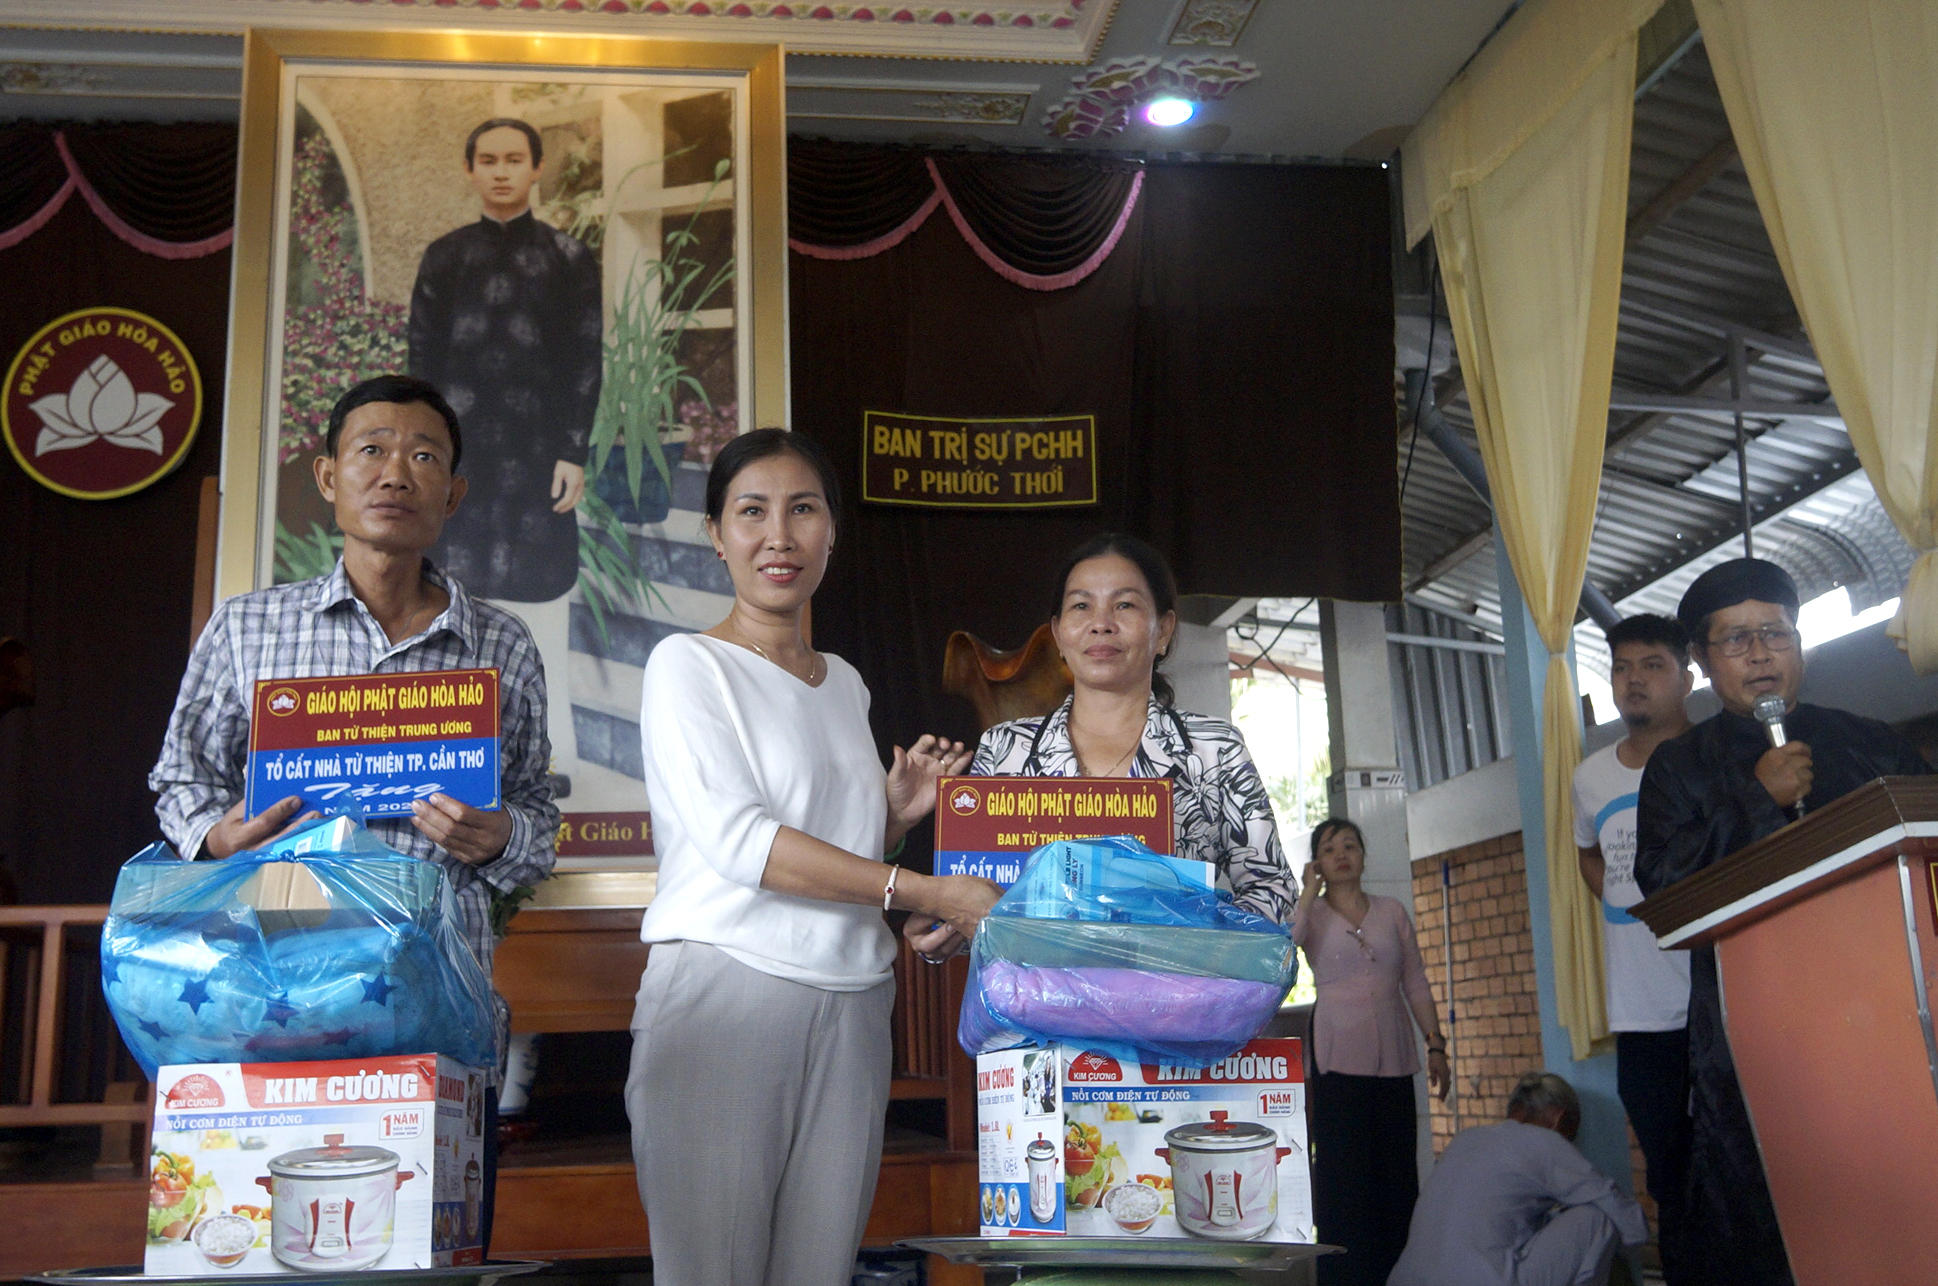 Ảnh 6: Bà Huỳnh Thị Bích Huyền – Nhà tài trợ cho Tổ cất nhà Từ thiện Tp. Cần Thơ trao quà cho đại diện gia đình được nhận nhà